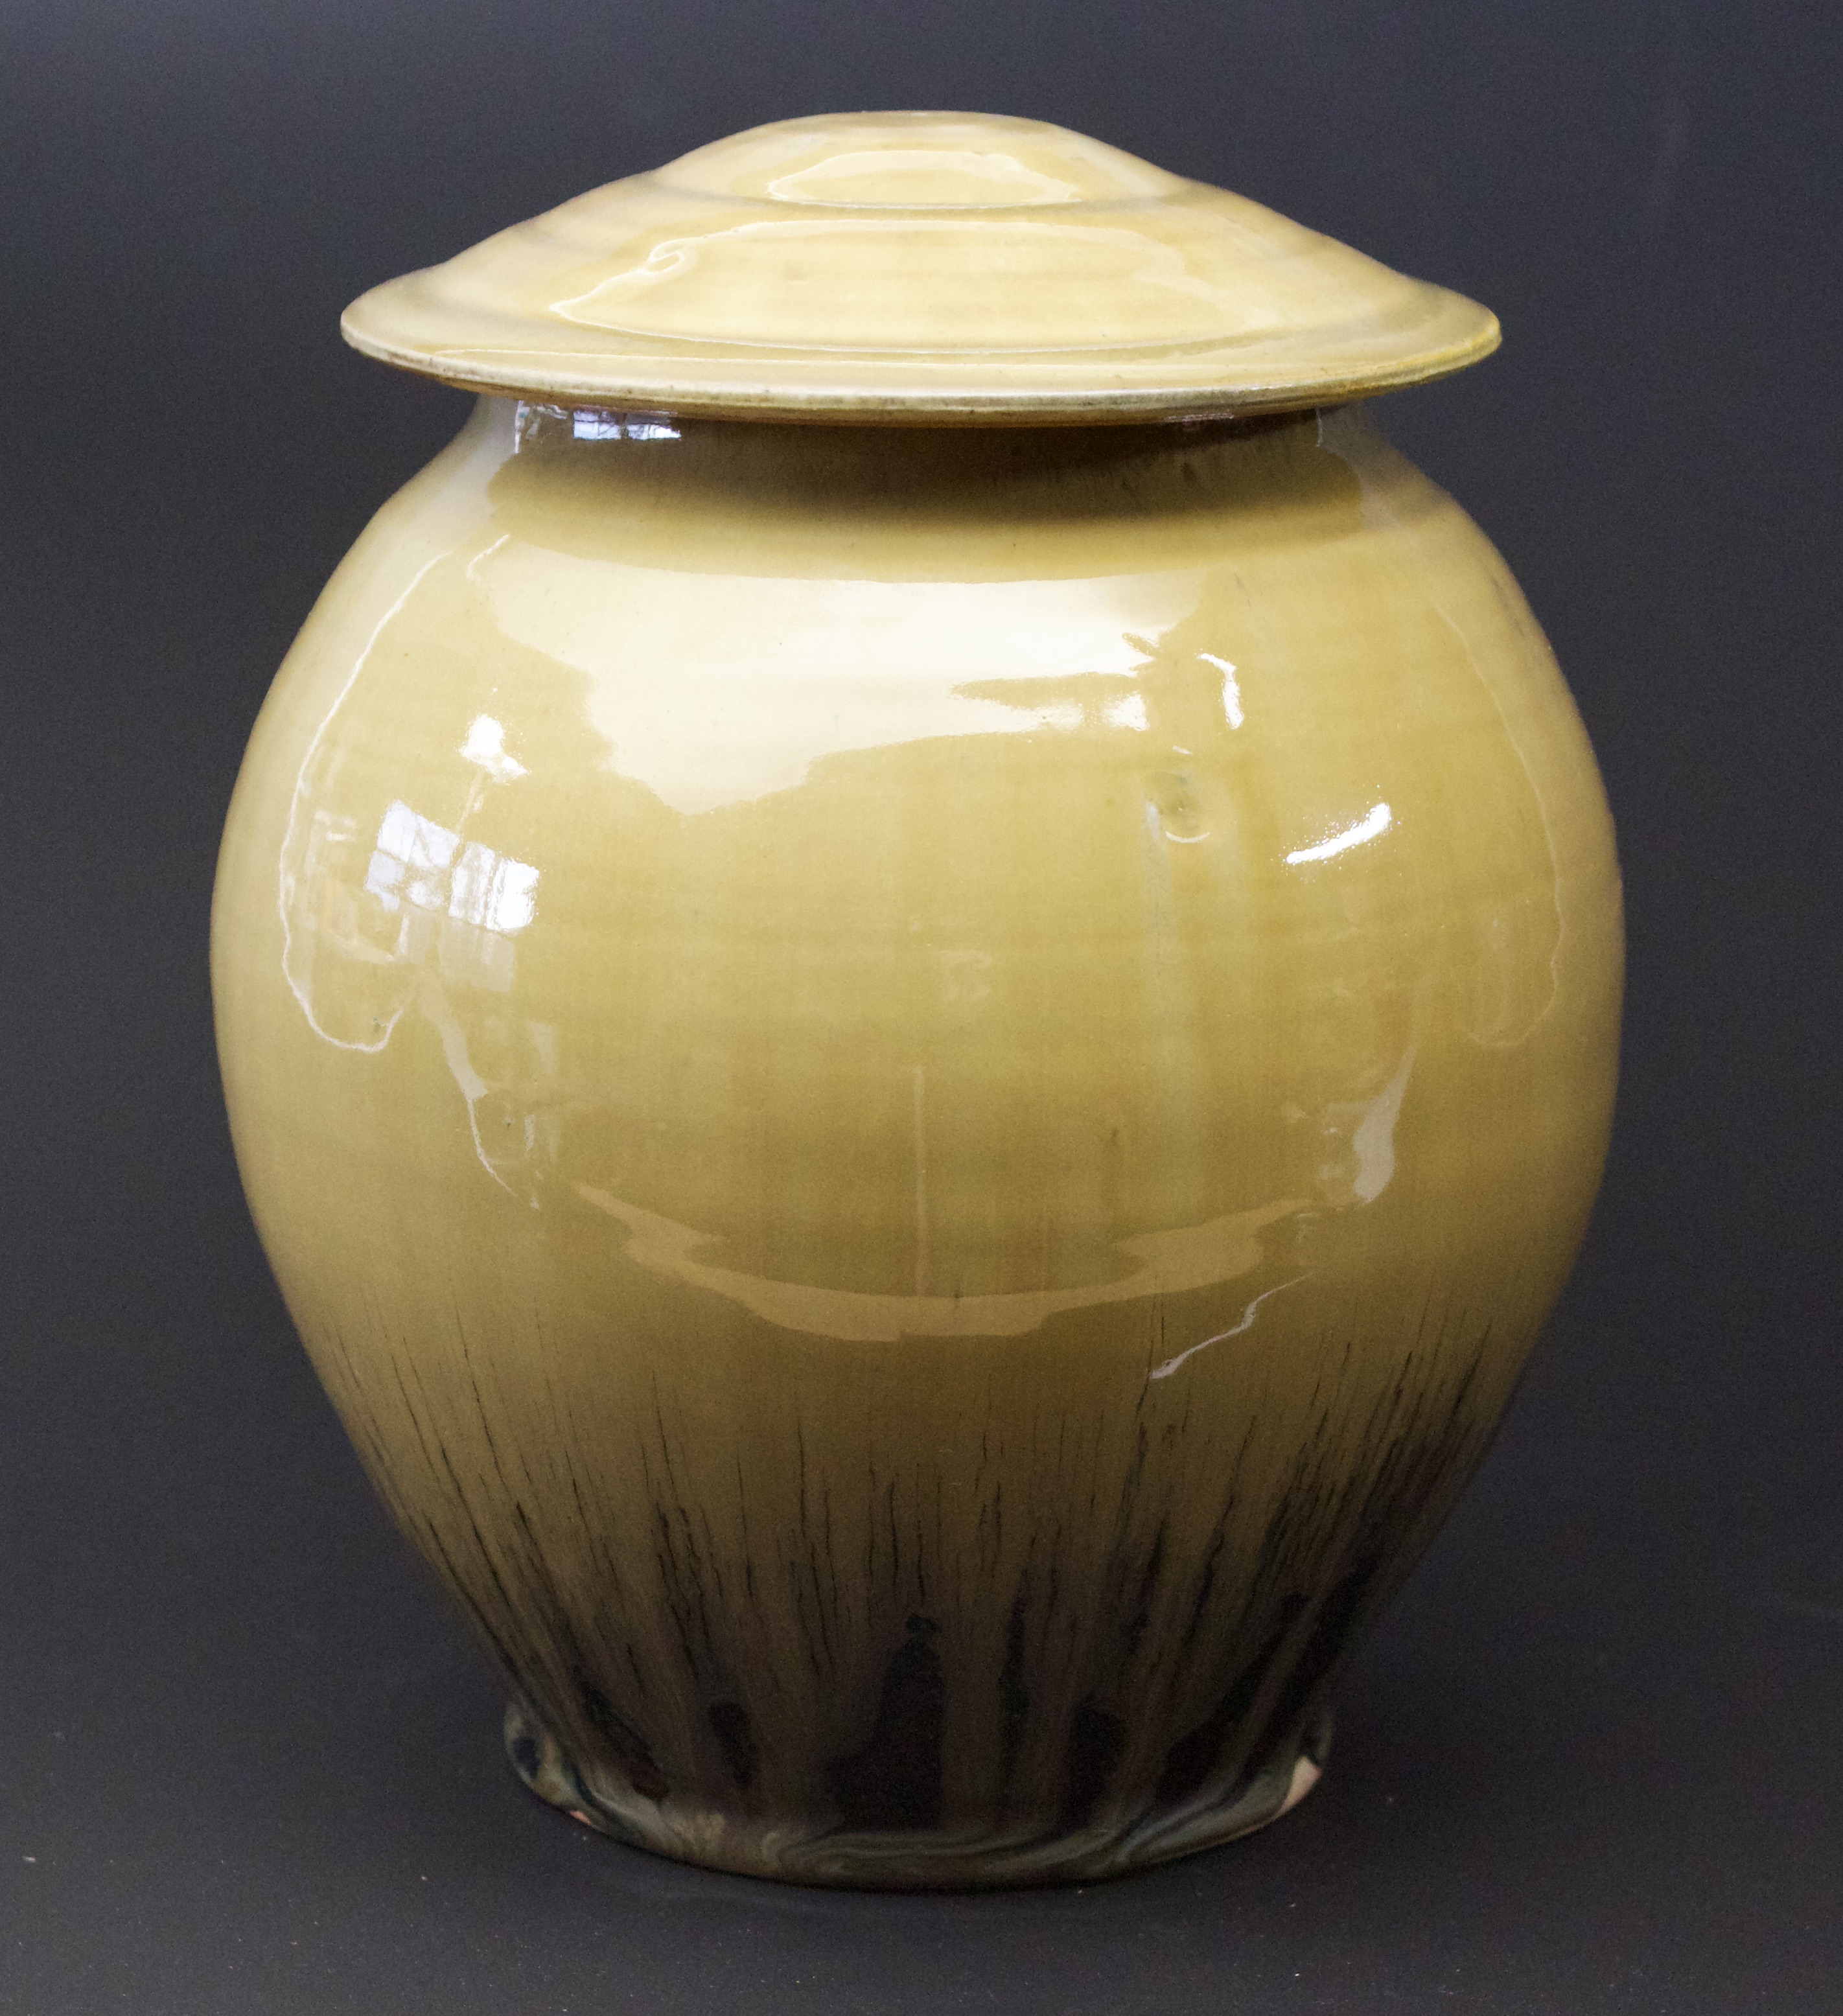 25. Jar with lid, Tenmoku & ash glaze
8" x 6"
$375